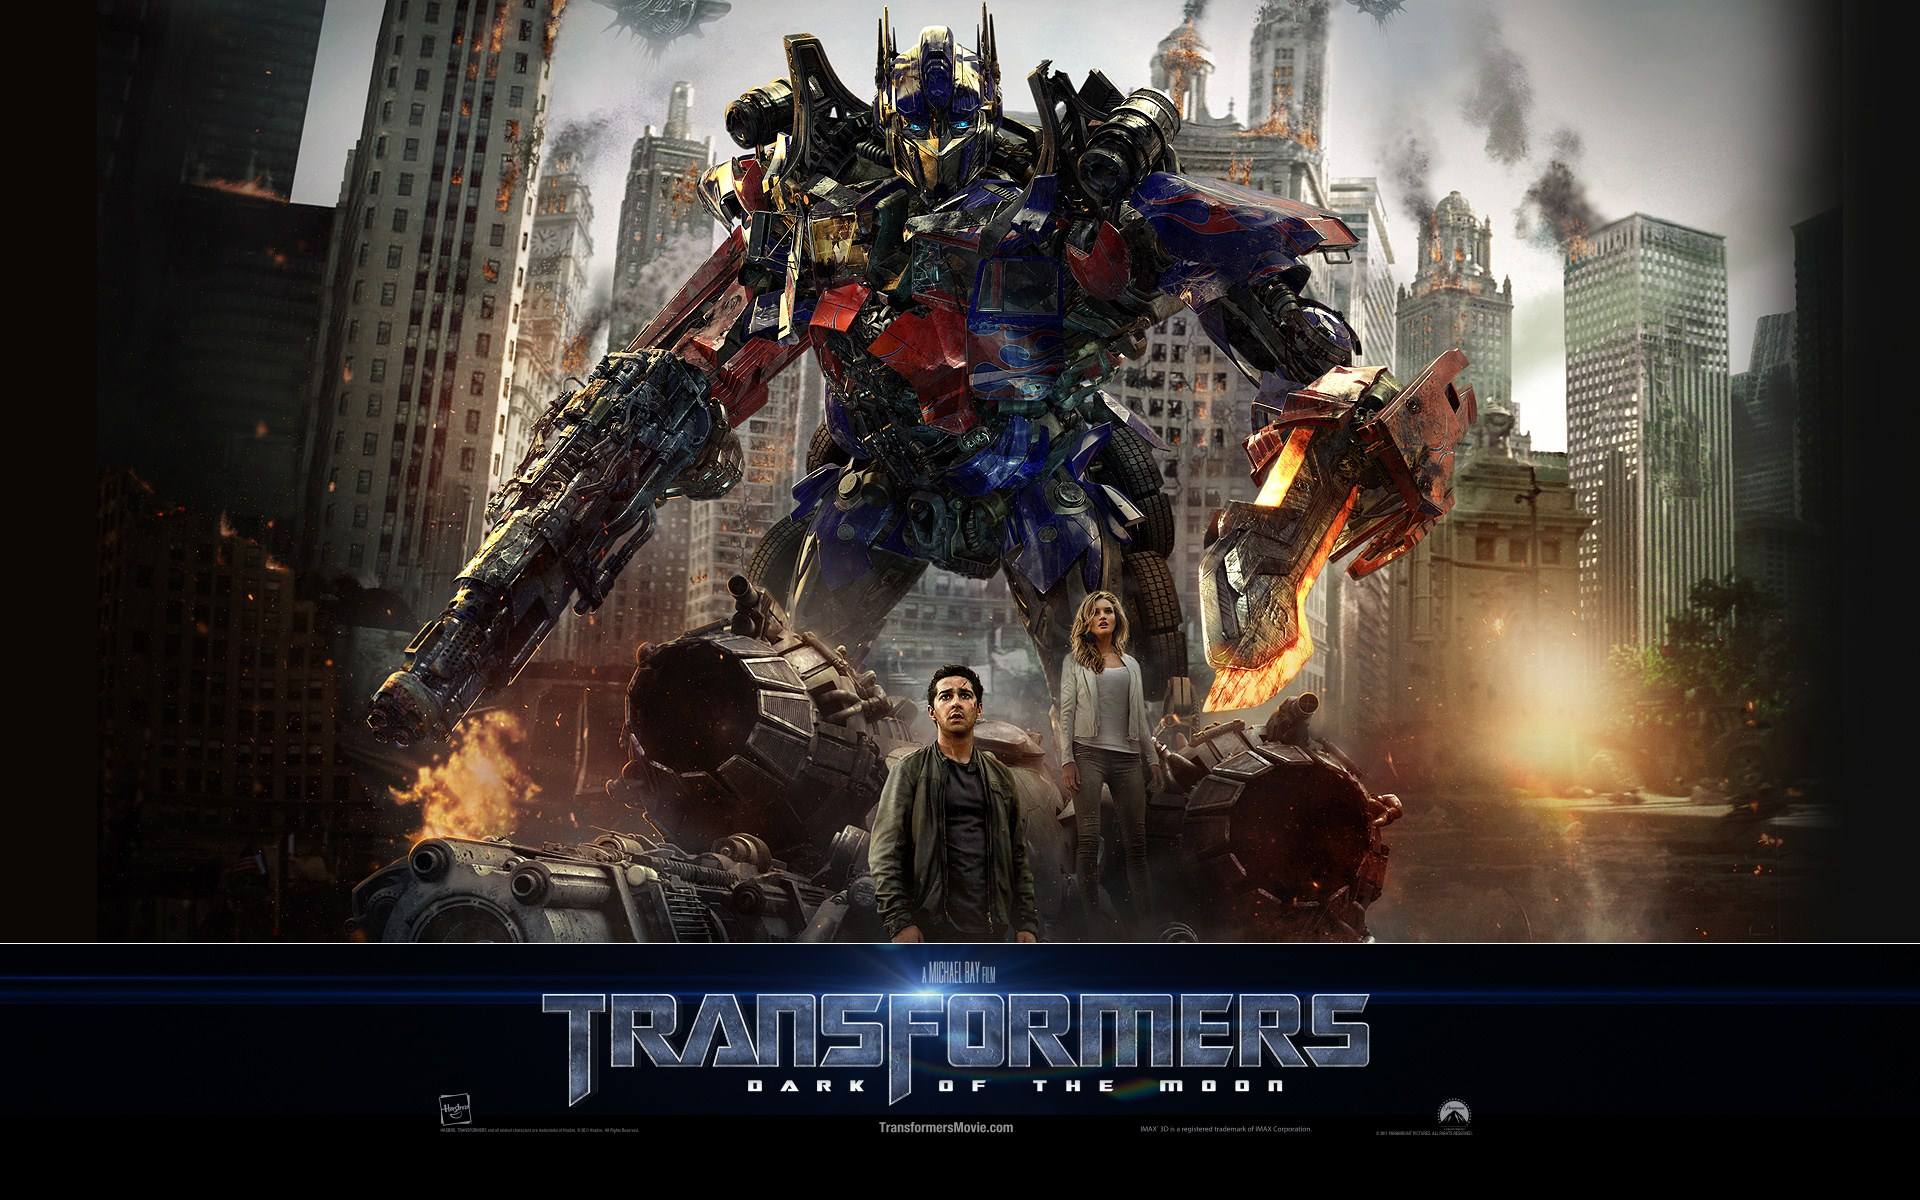 [变形金刚3].Transformers.Dark.of.the.Moon.2011.HK.UHD.BluRay.2160p.HEVC.TrueHD.7.1-sGnb@CHDBits   100.07G-7.jpg